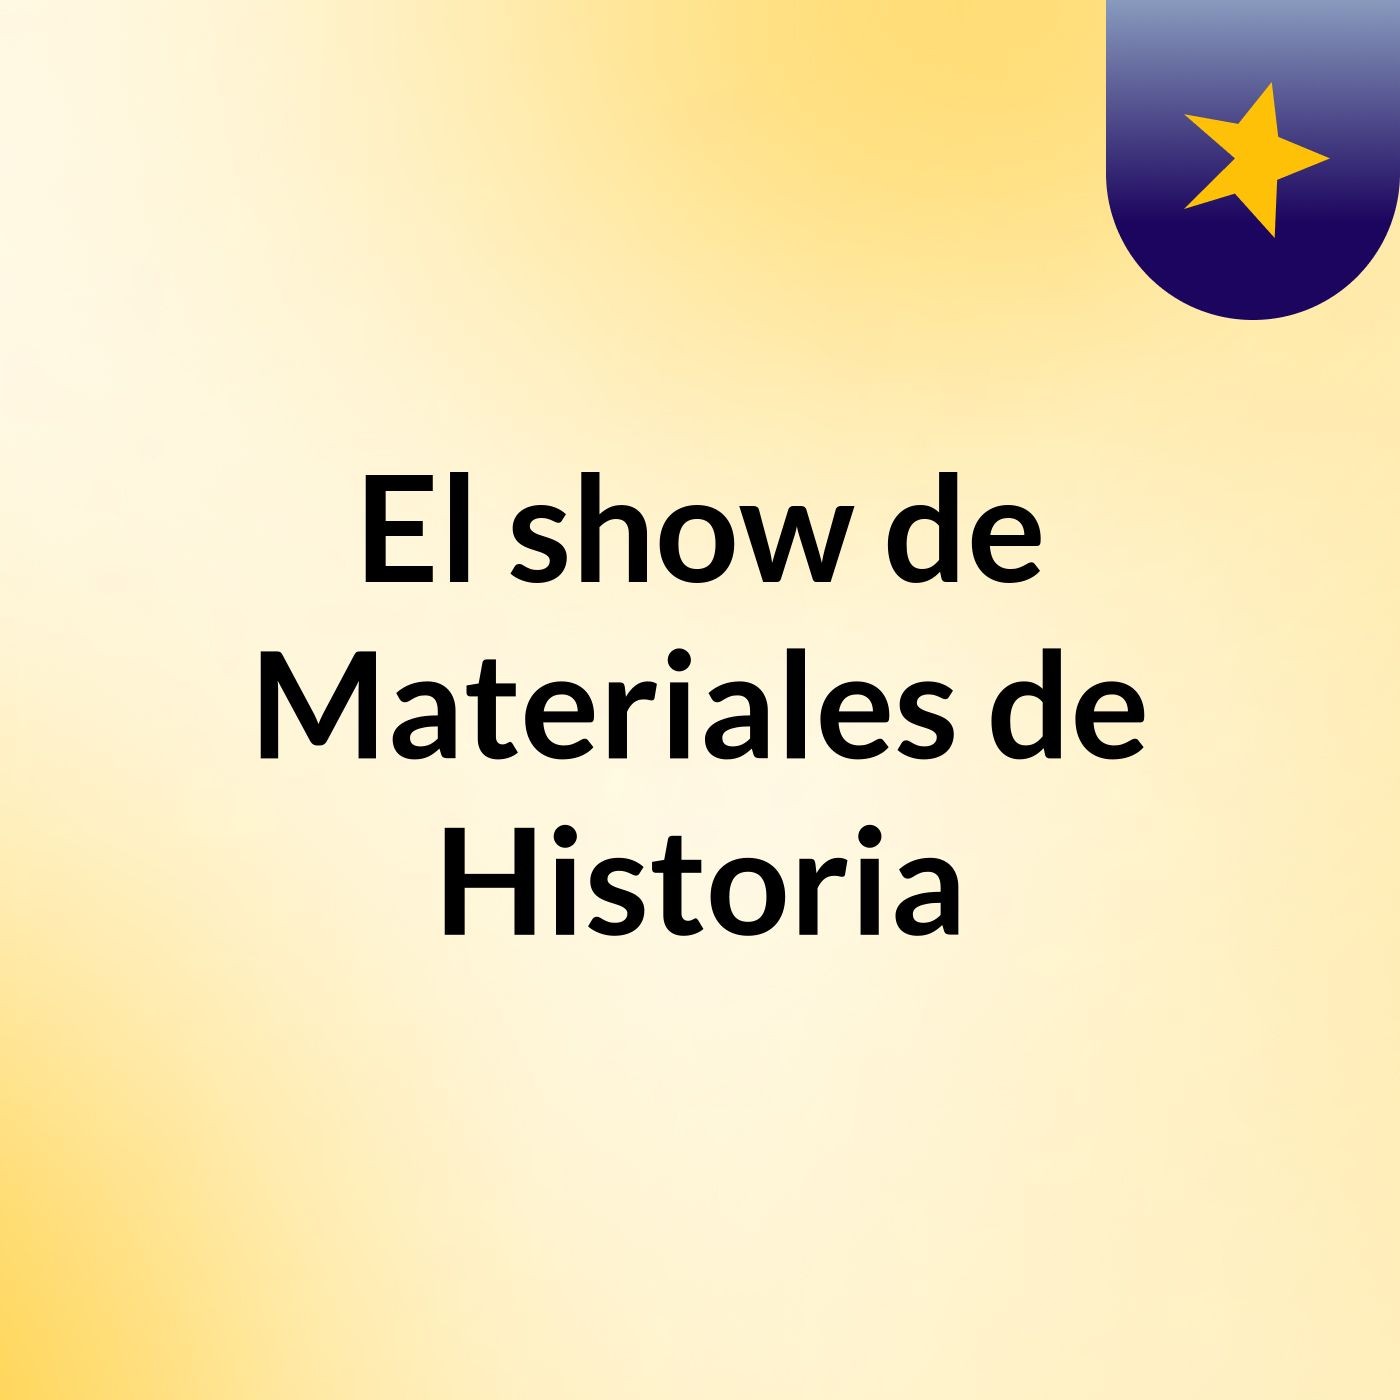 El show de Materiales de Historia